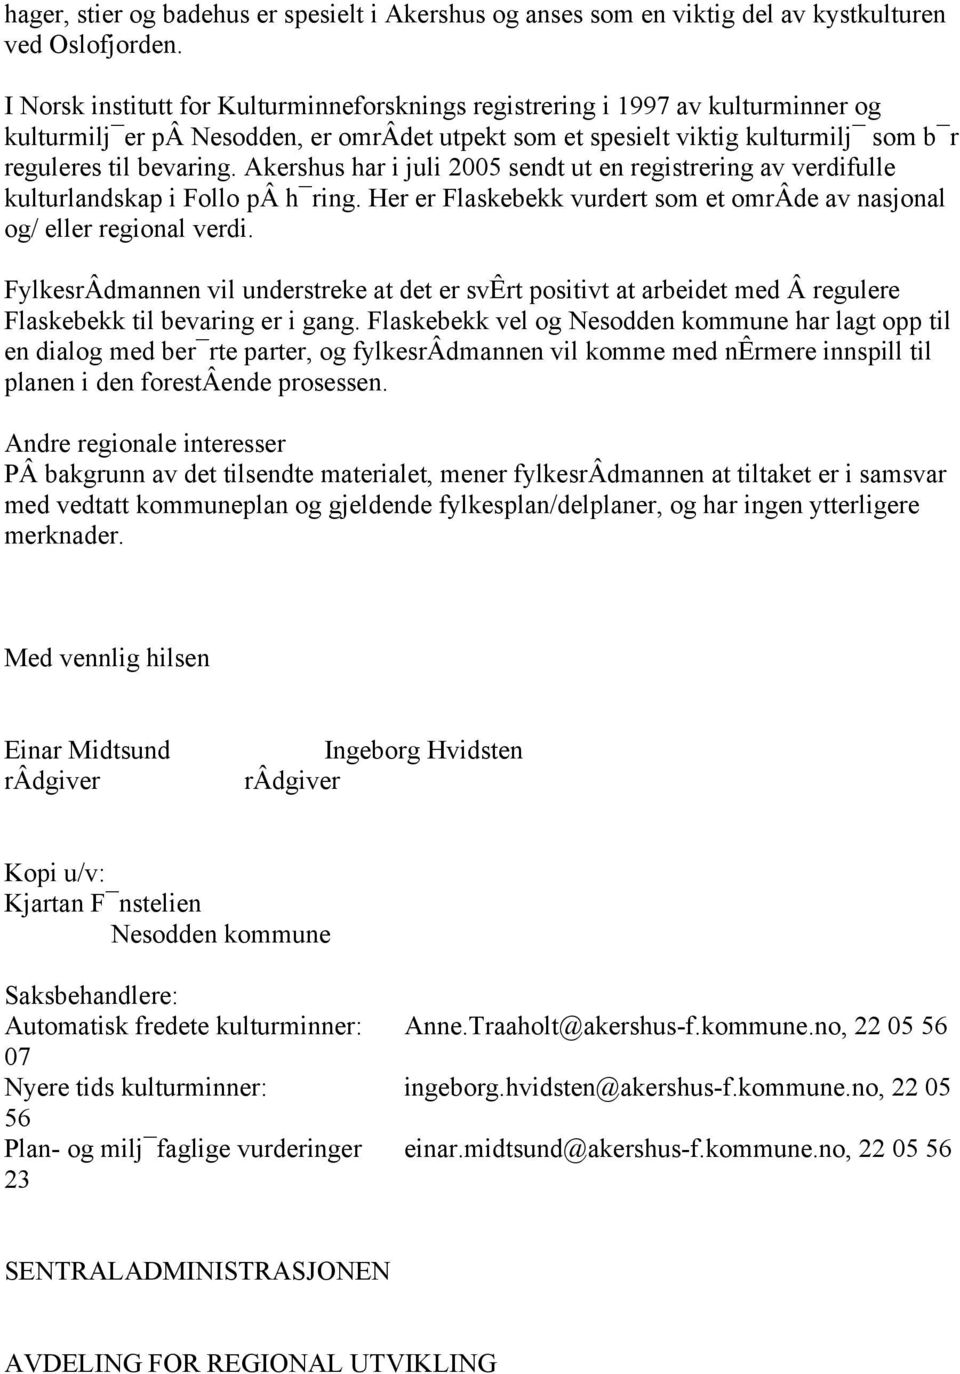 Akershus har i juli 2005 sendt ut en registrering av verdifulle kulturlandskap i Follo pâ h ring. Her er Flaskebekk vurdert som et omrâde av nasjonal og/ eller regional verdi.